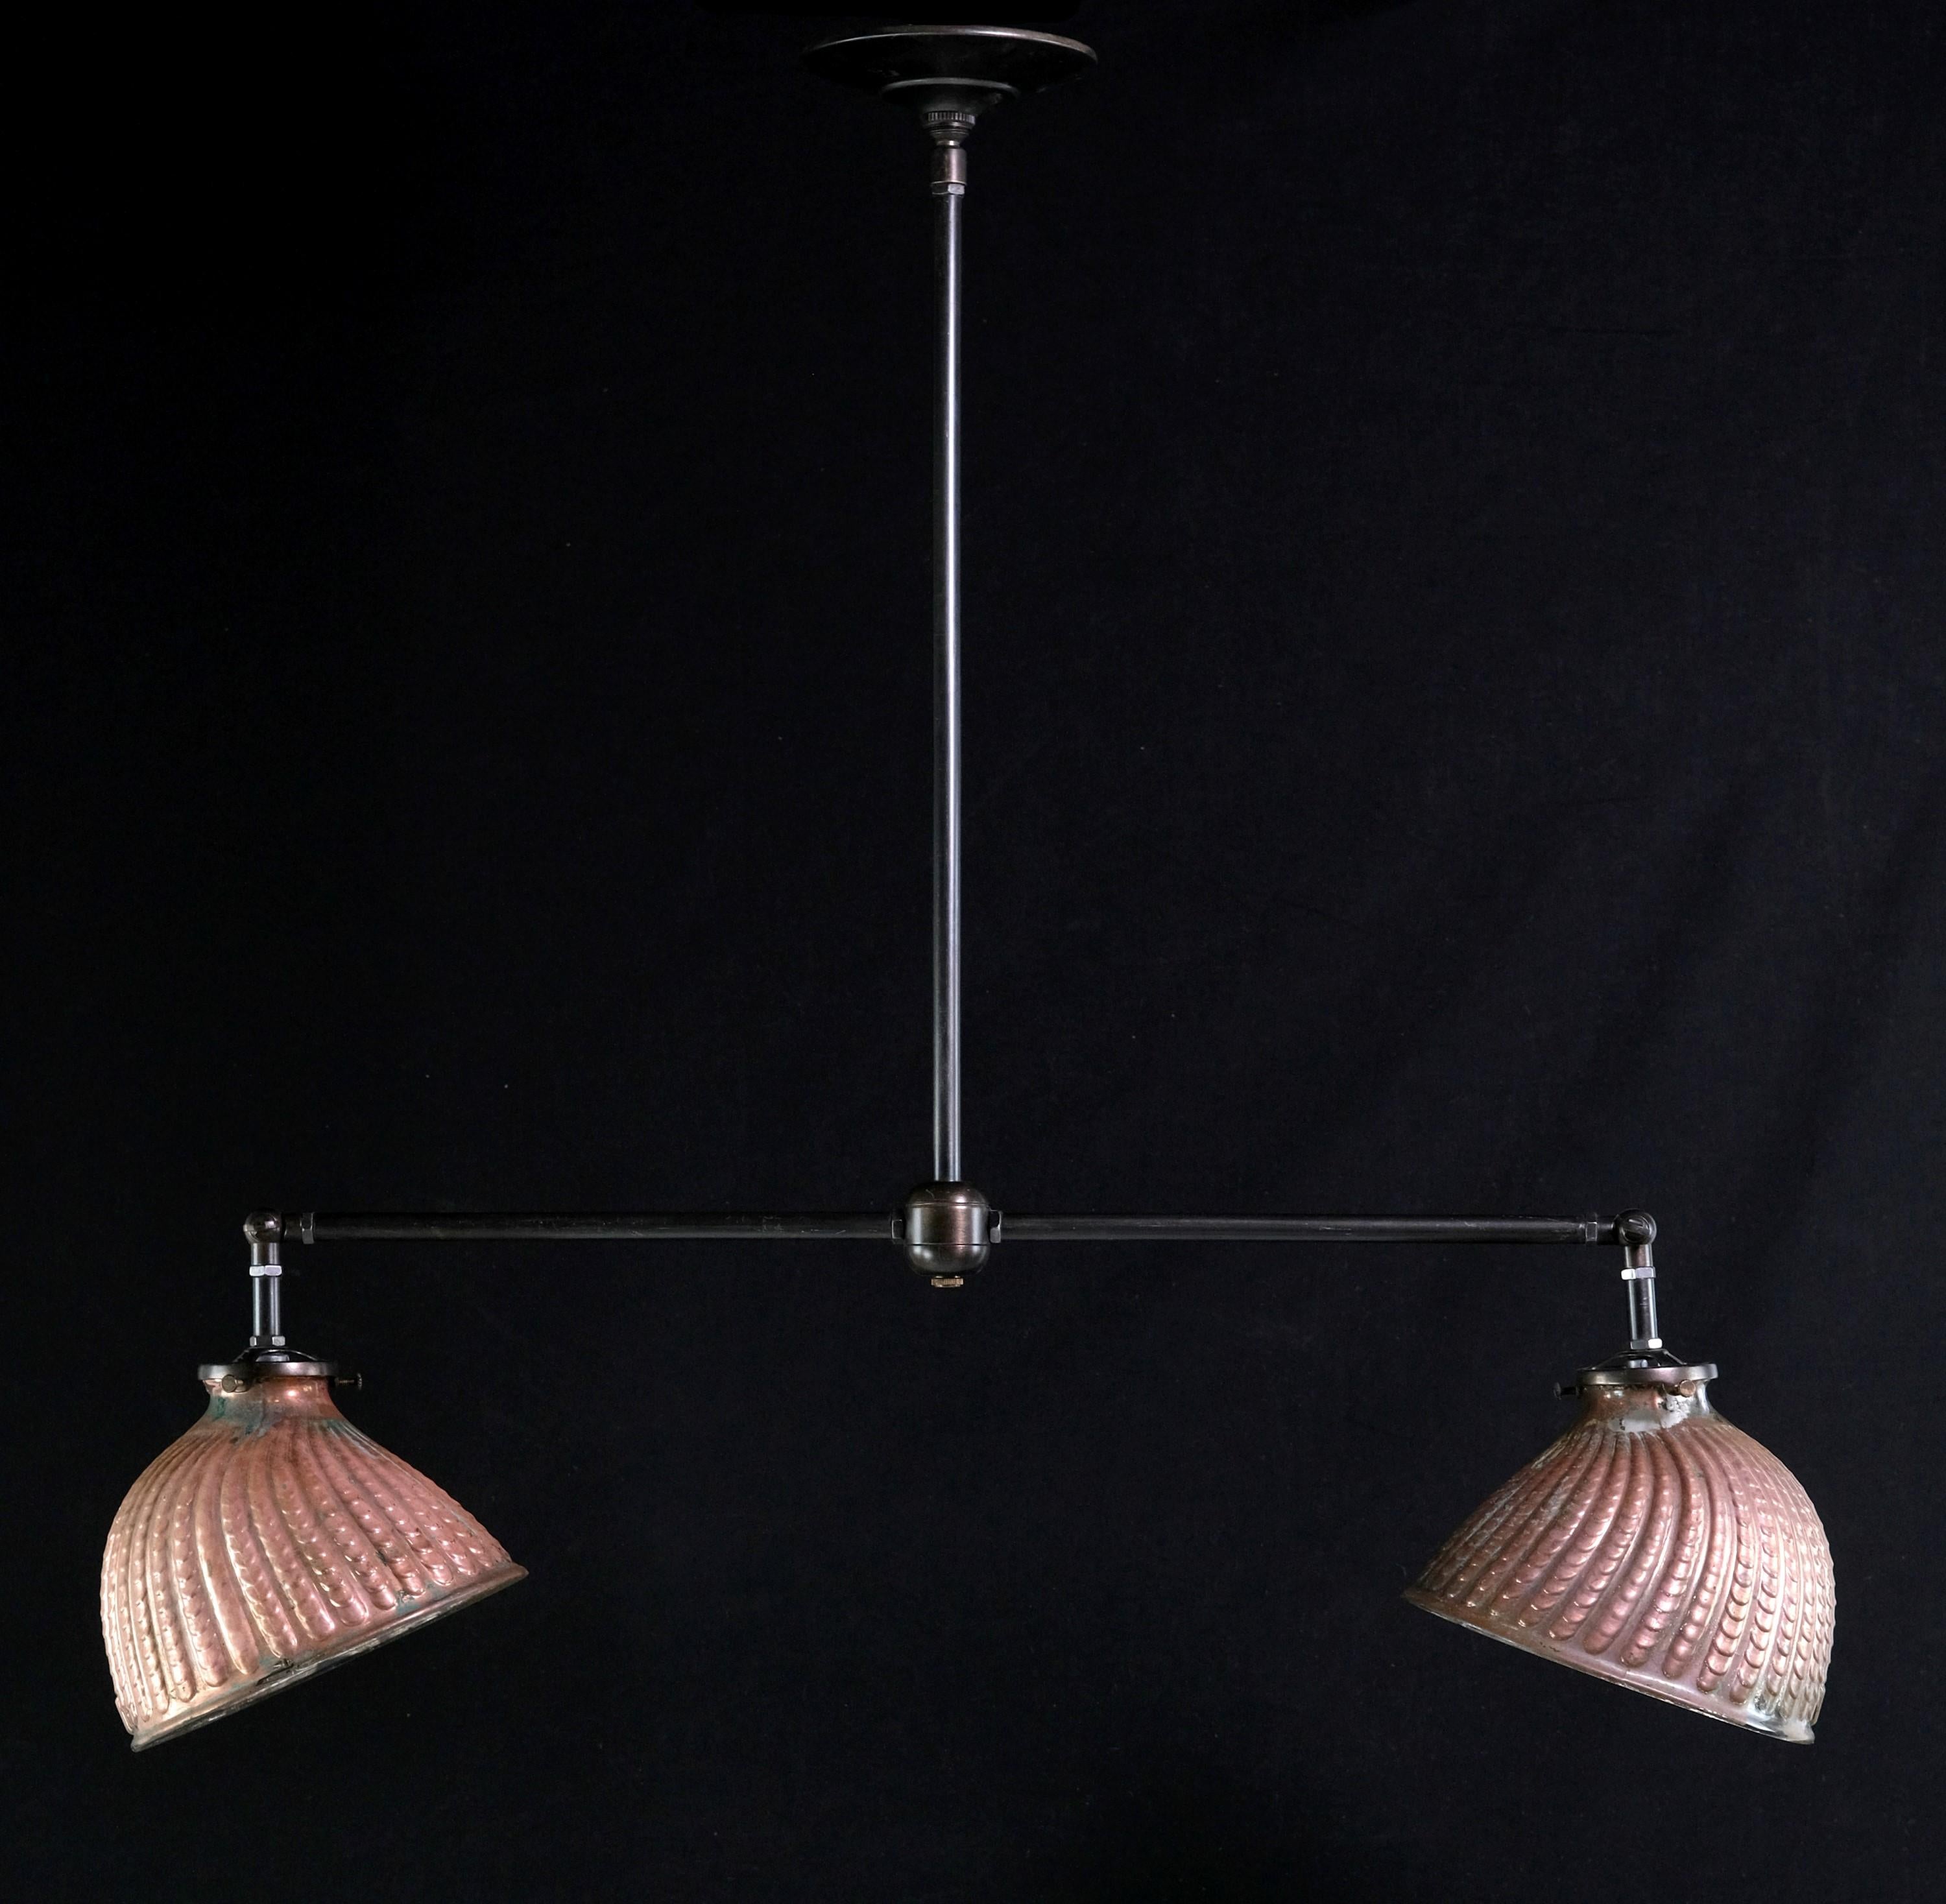 Deux abat-jour en verre au mercure plaqué cuivre datant des années 1910 ont été réutilisés pour créer cette lampe suspendue à double tête en laiton. Idéal pour les îlots de cuisine. Ces abat-jour uniques ont la forme d'une coquille de palourde et